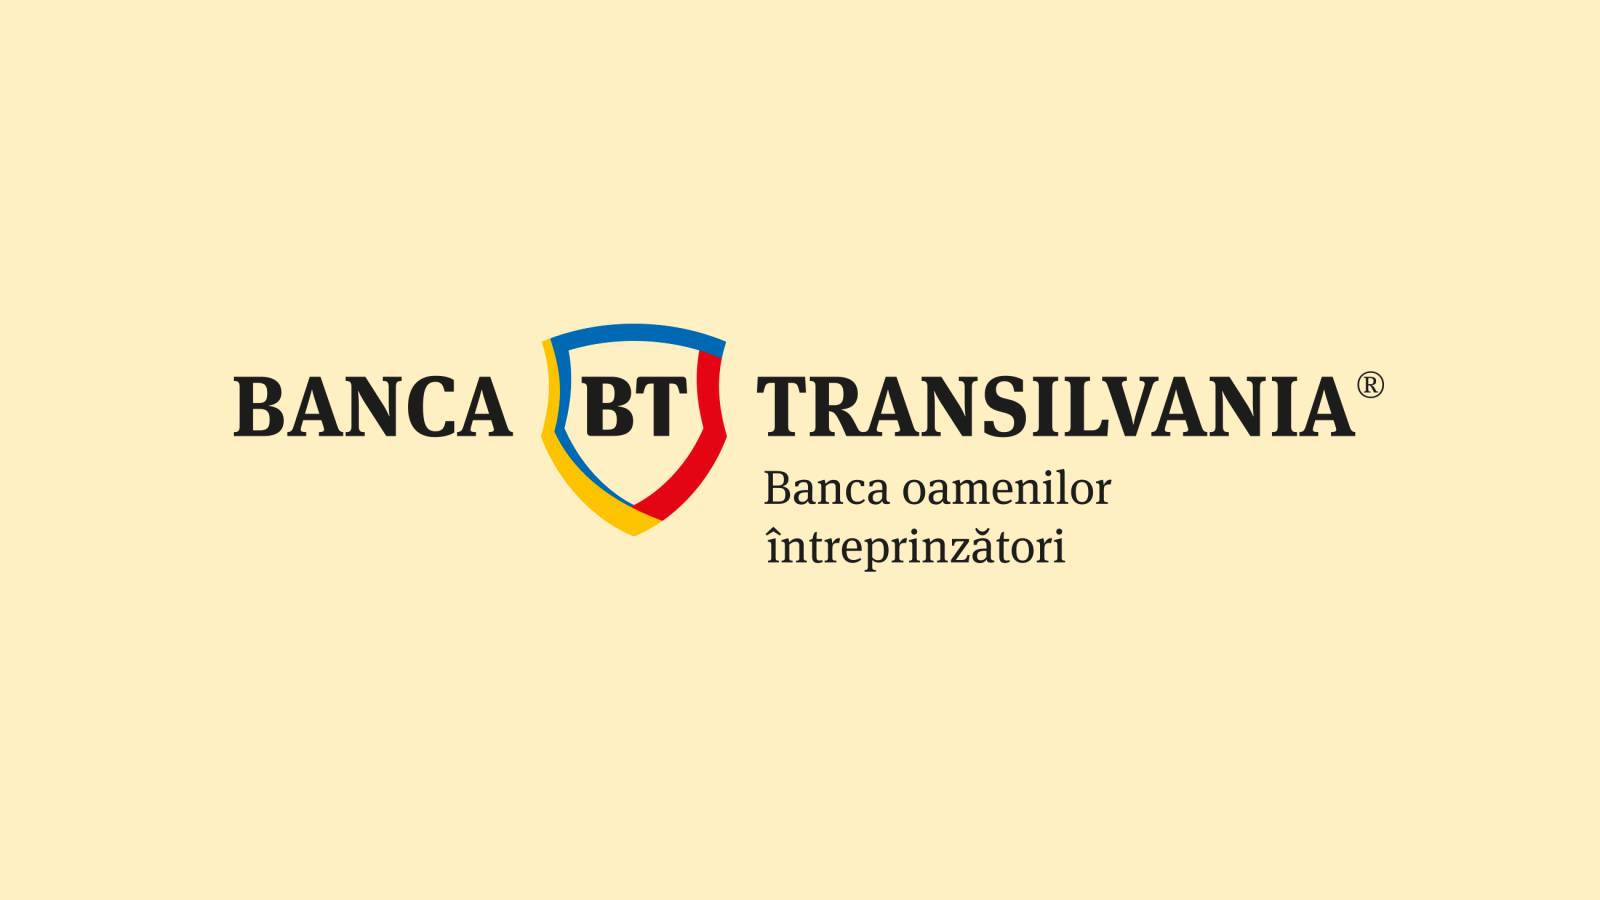 BANCA Transilvania stuurt vandaag officieel een BELANGRIJKE mededeling naar klanten